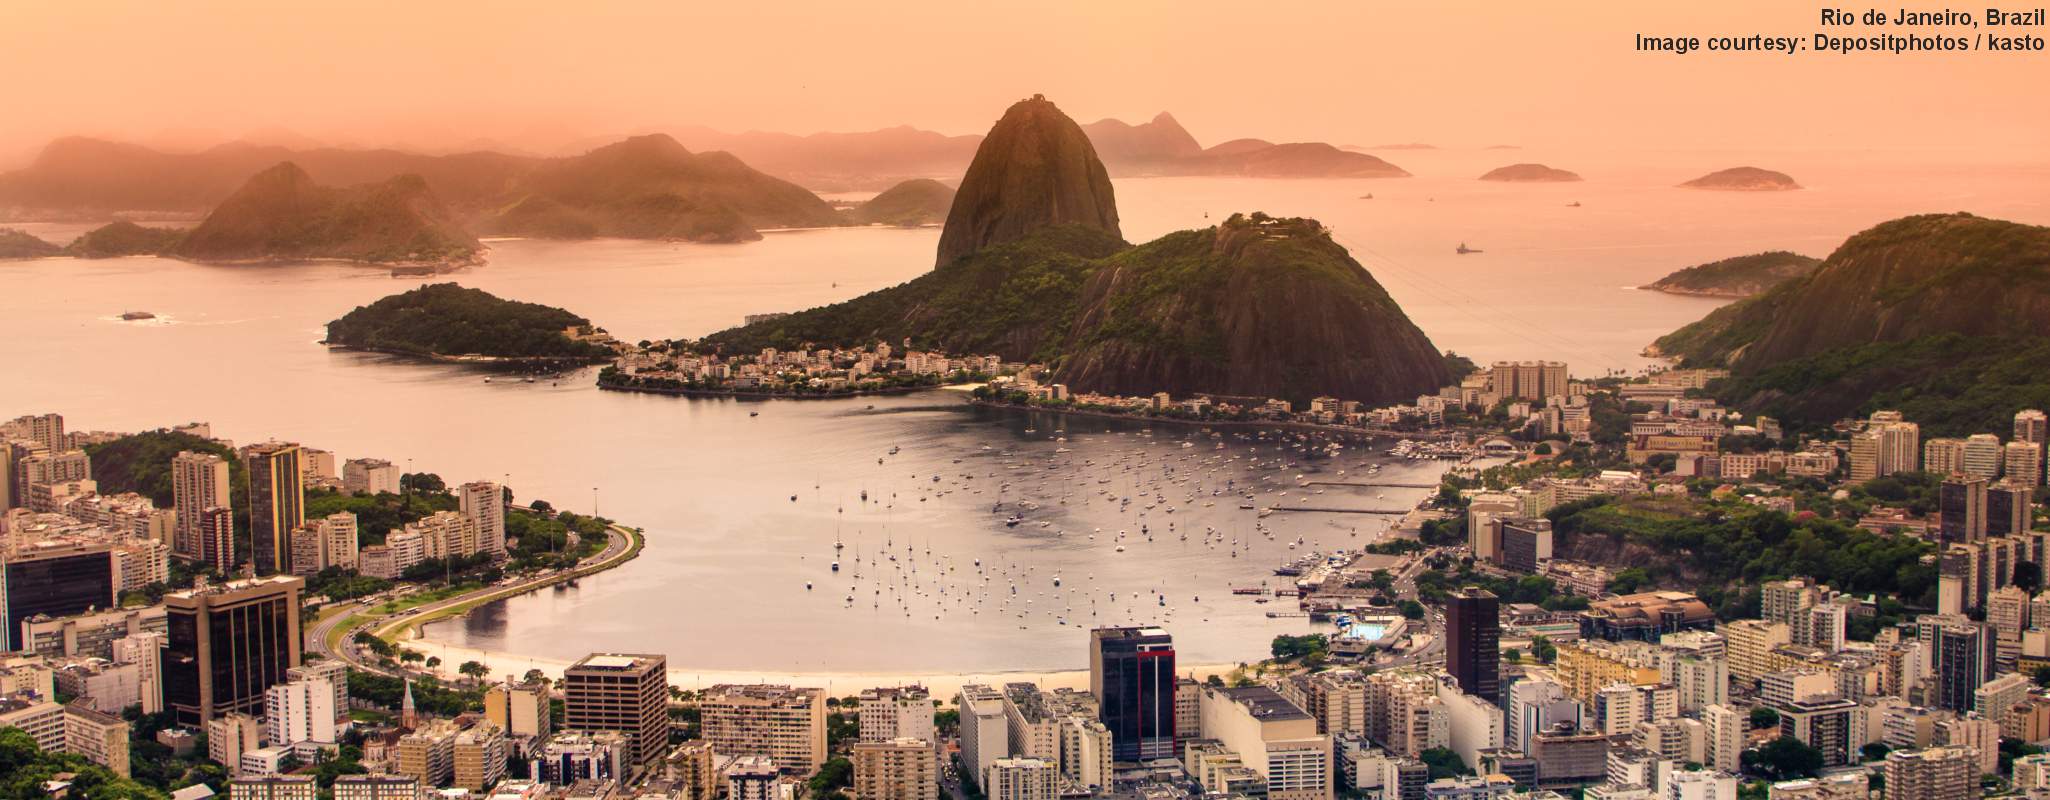 Rio de Janeiro image